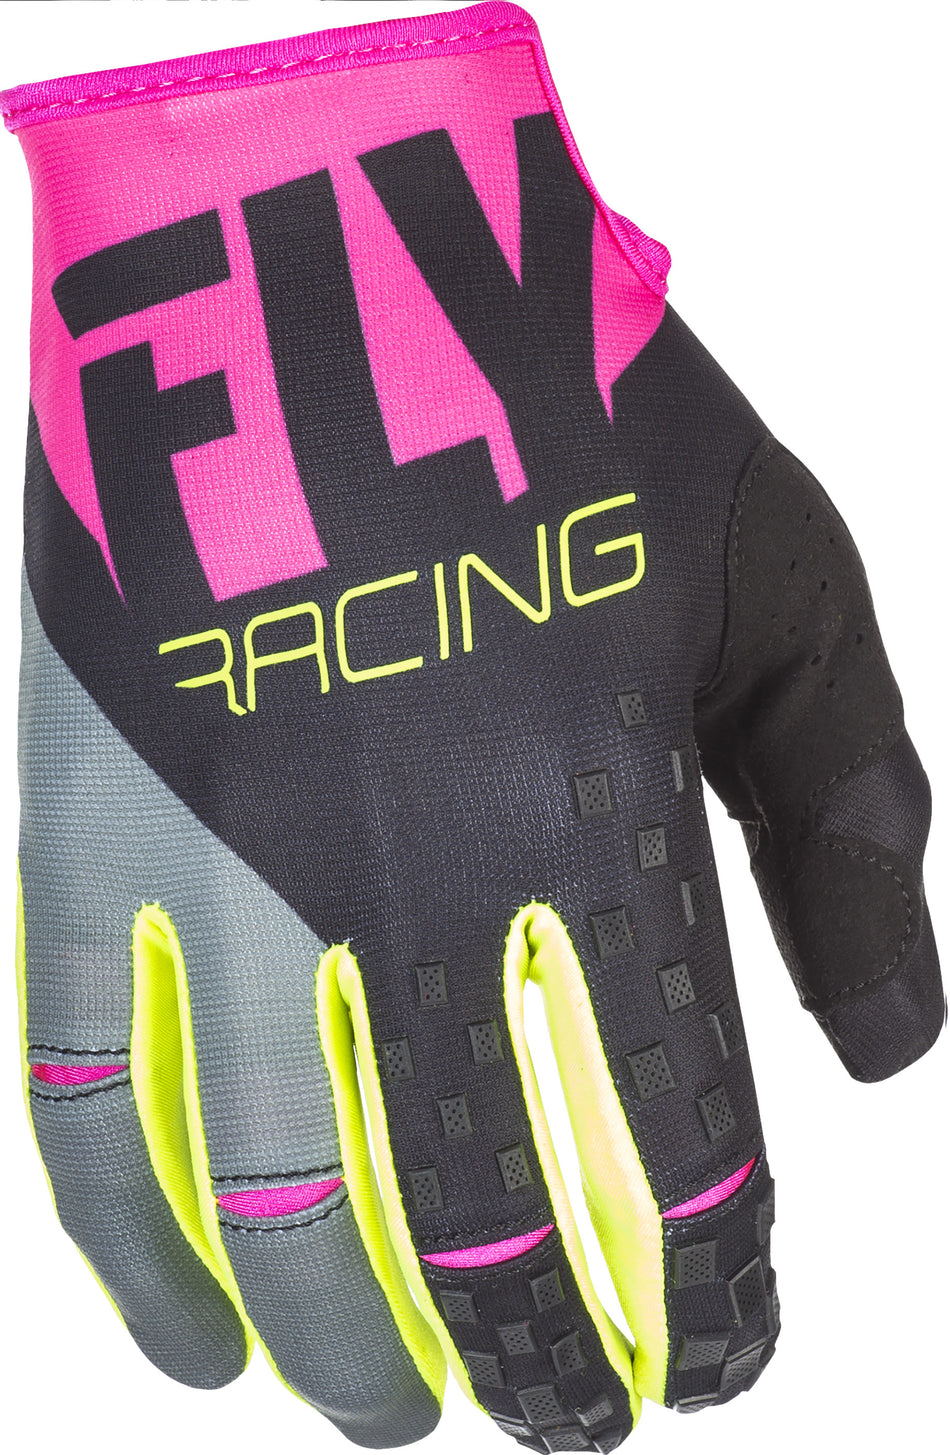 FLY RACING Kinetic Gloves Neon Pink/Black/Hi-Vis Sz 11 371-41911